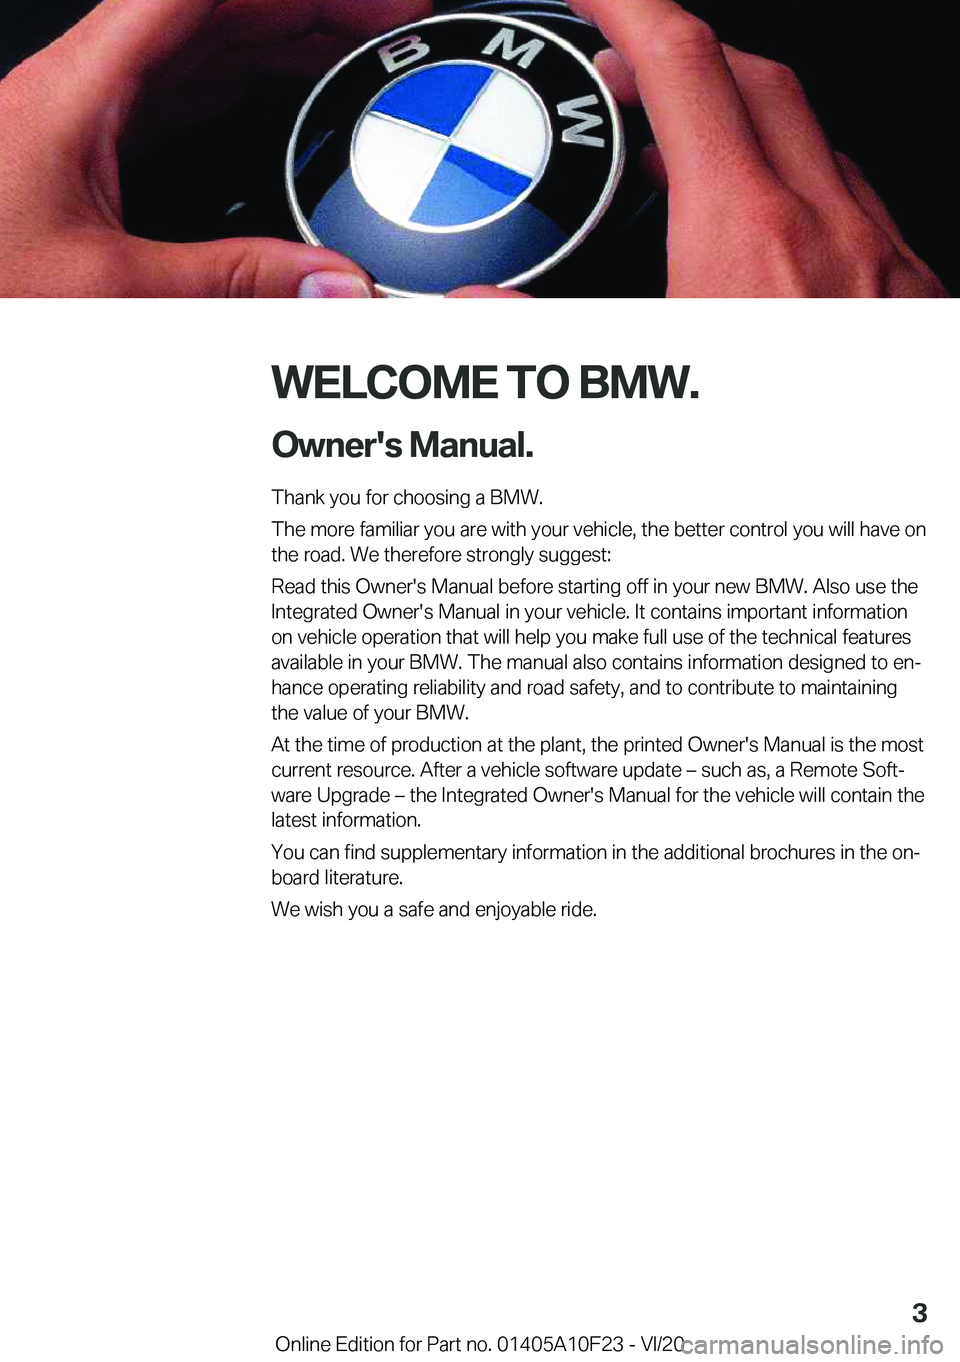 BMW X3 PLUG-IN HYBRID 2021  Owners Manual �W�E�L�C�O�M�E��T�O��B�M�W�.�O�w�n�e�r�'�s��M�a�n�u�a�l�.
�T�h�a�n�k��y�o�u��f�o�r��c�h�o�o�s�i�n�g��a��B�M�W�.
�T�h�e��m�o�r�e��f�a�m�i�l�i�a�r��y�o�u��a�r�e��w�i�t�h��y�o�u�r��v�e